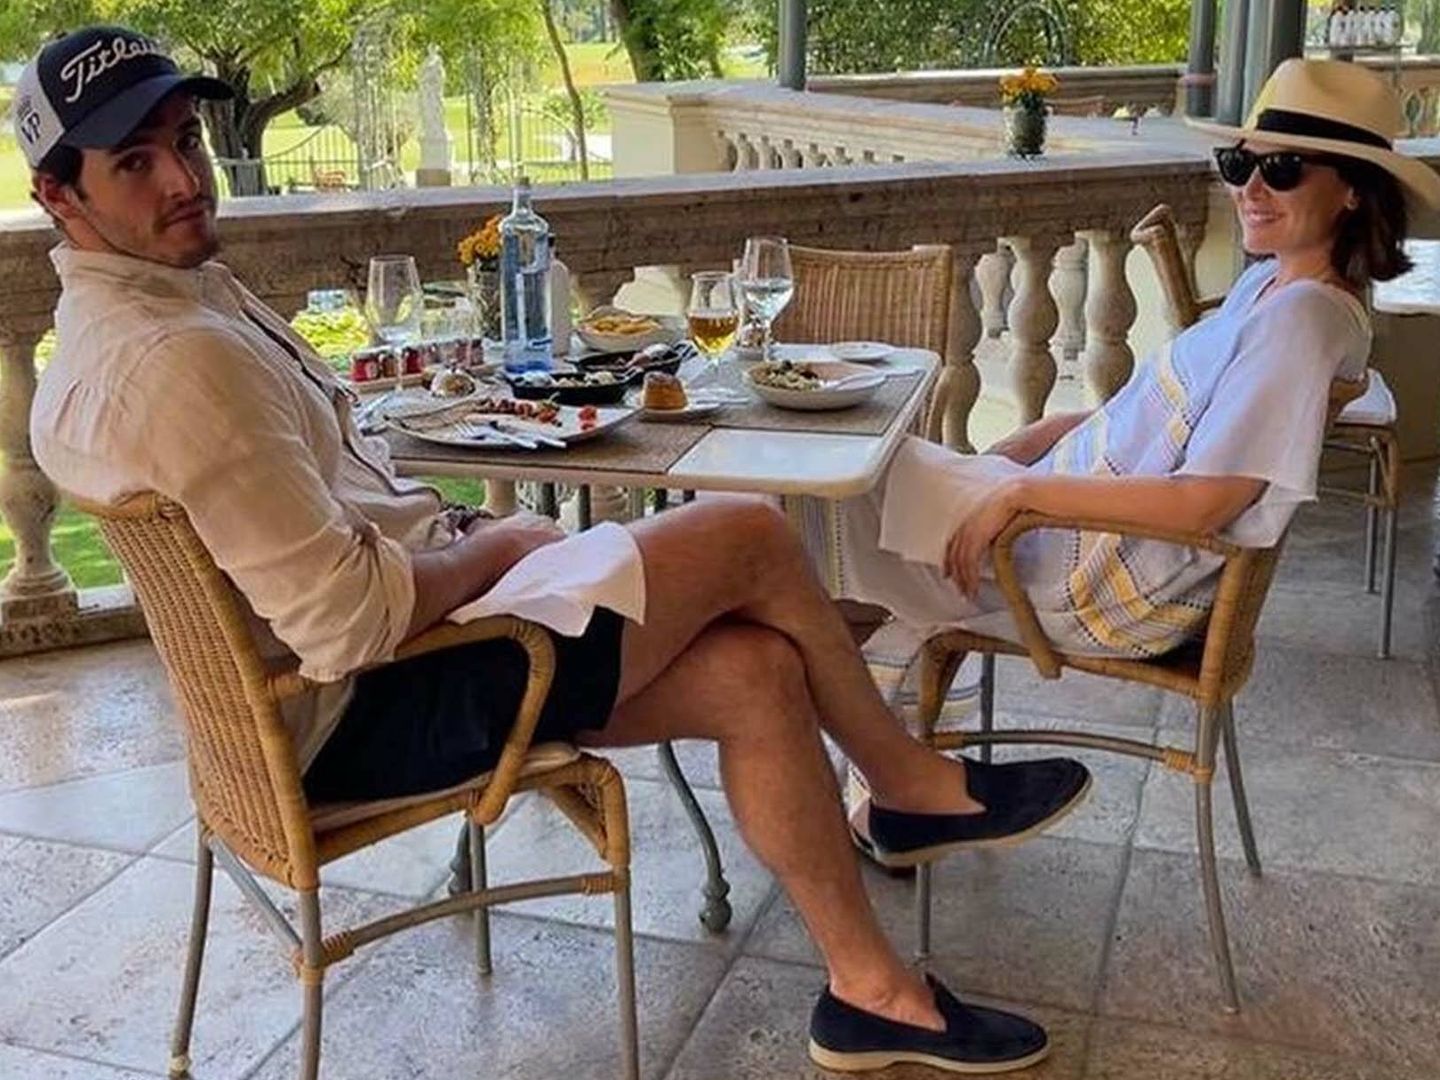 Tamara Falcó e Iñigo Onieva, durante sus vacaciones en Marbella. (Instagram/@tamara_falco)